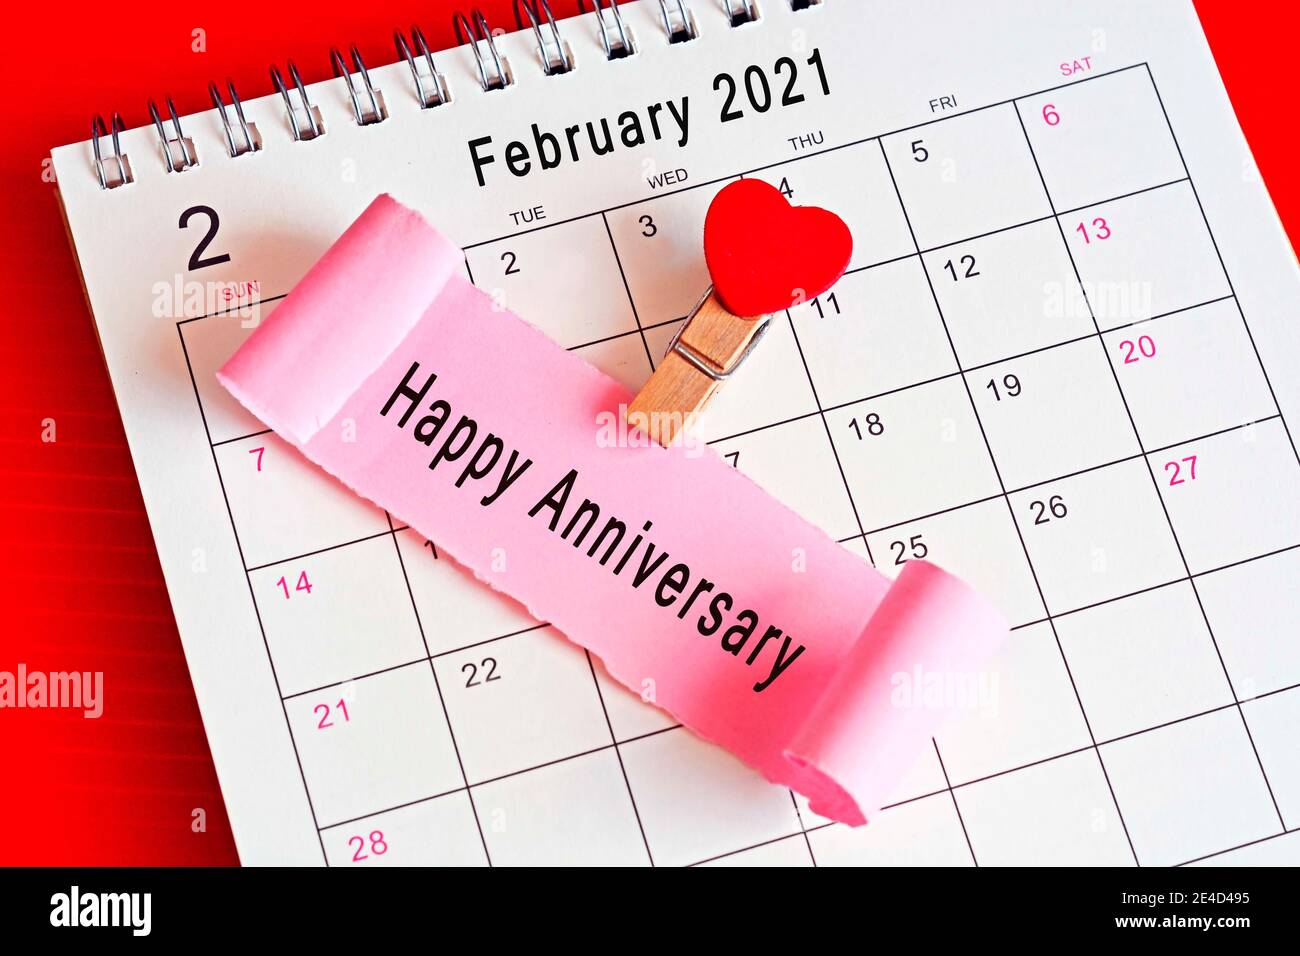 Papel roto en el calendario de febrero de 2021 con fase - Feliz aniversario. Concepto de aniversario y día de San Valentín Foto de stock